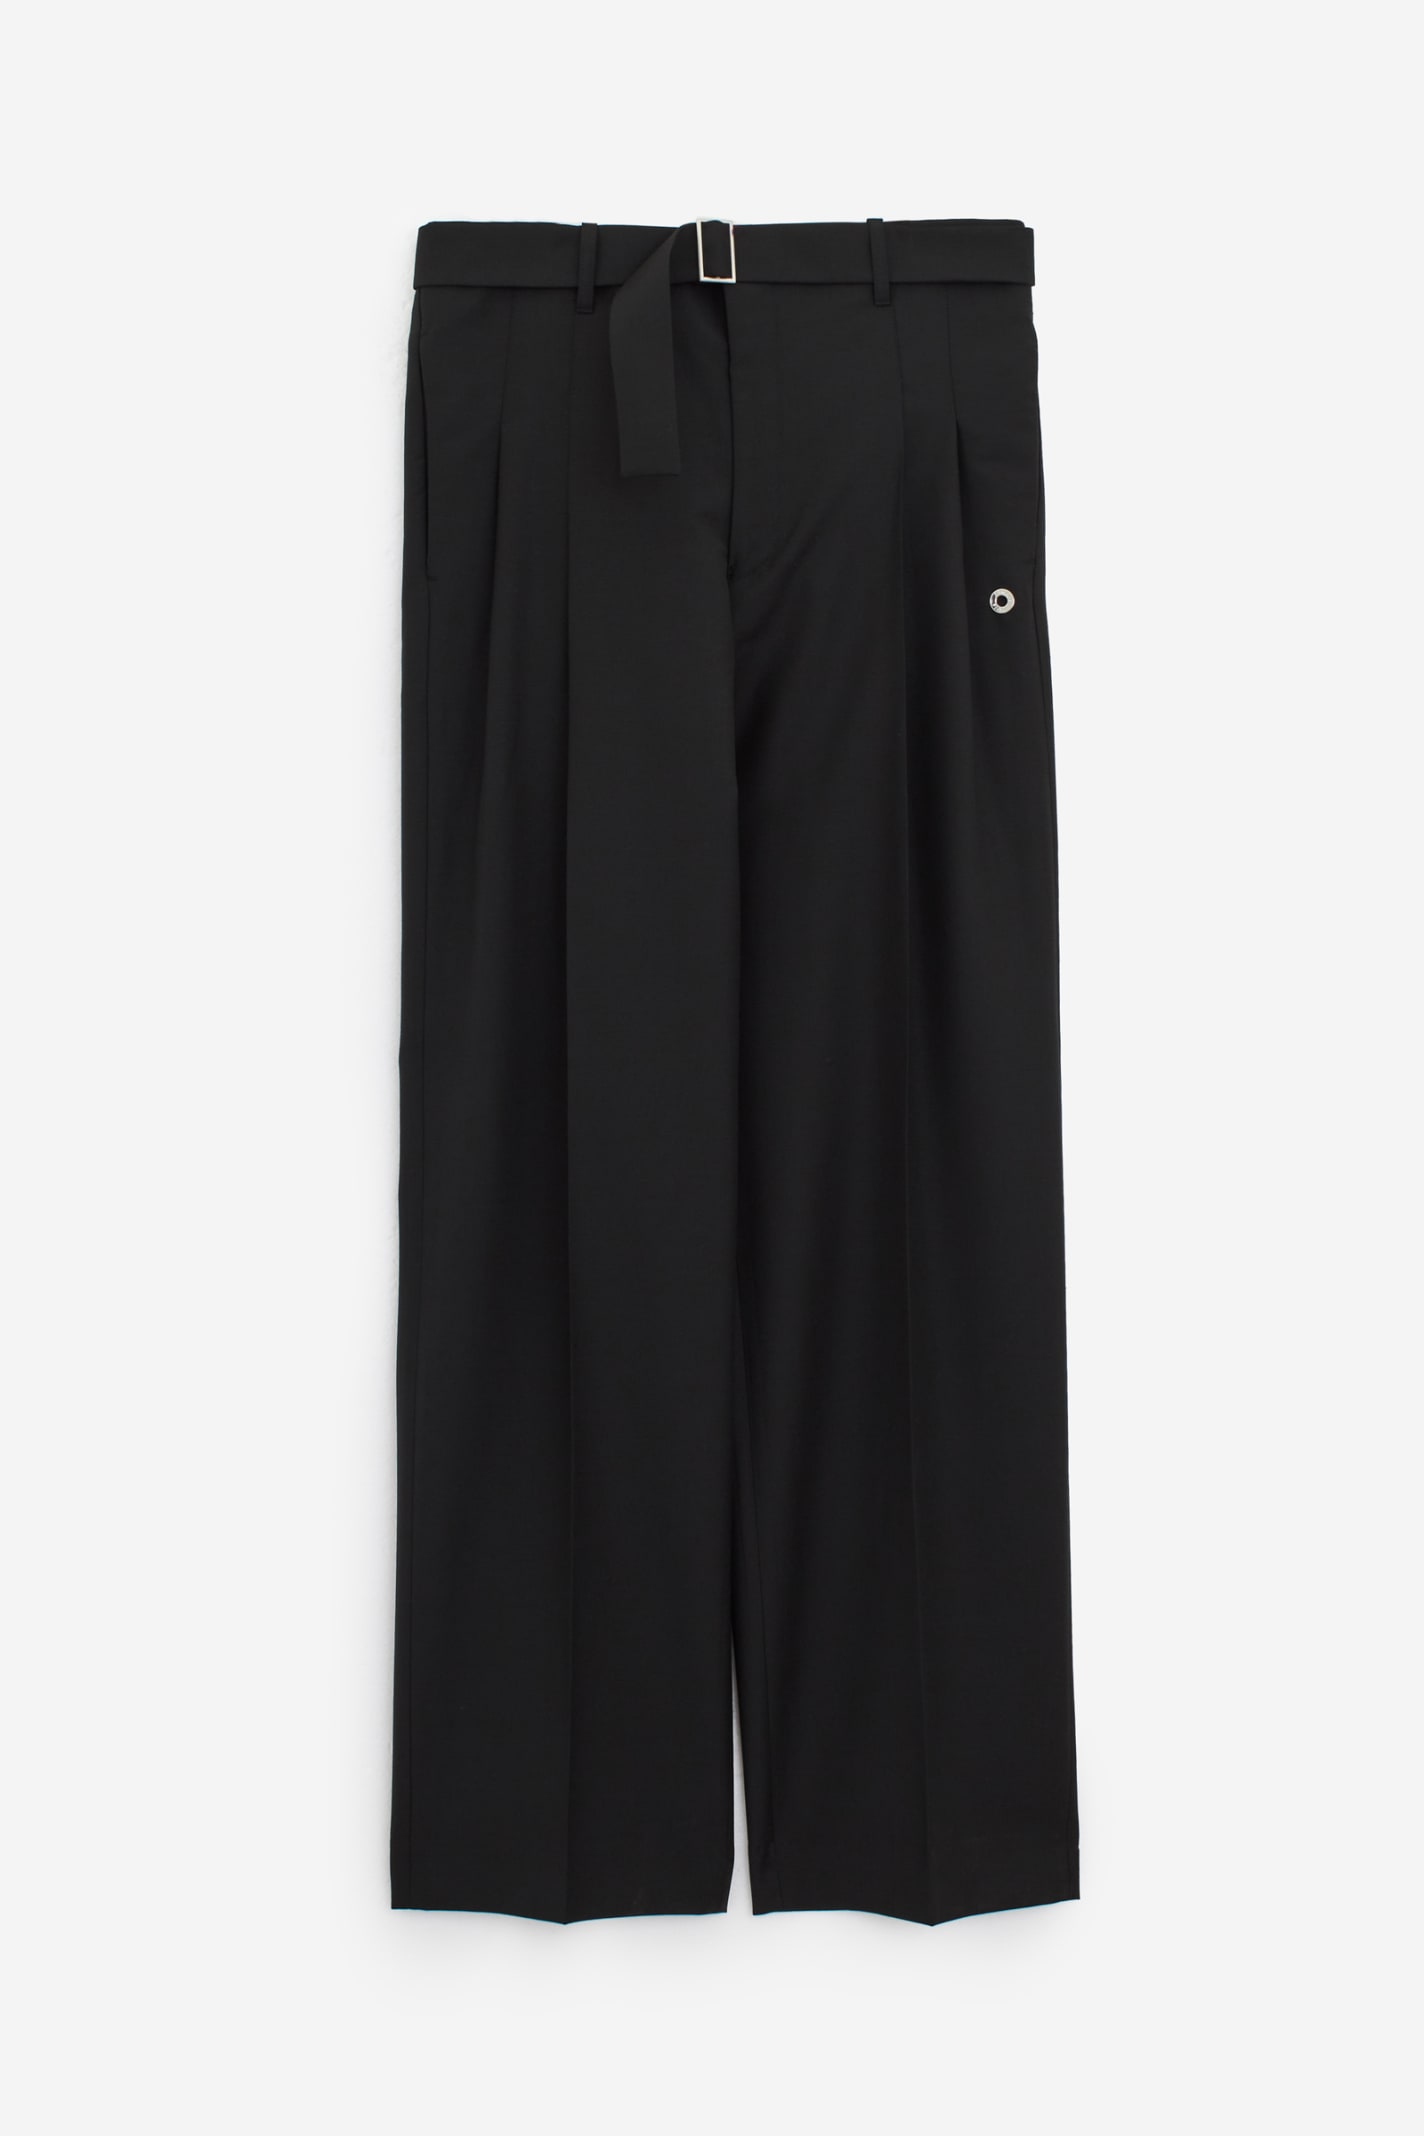 Shop Etudes Studio Cooper Pants In Black